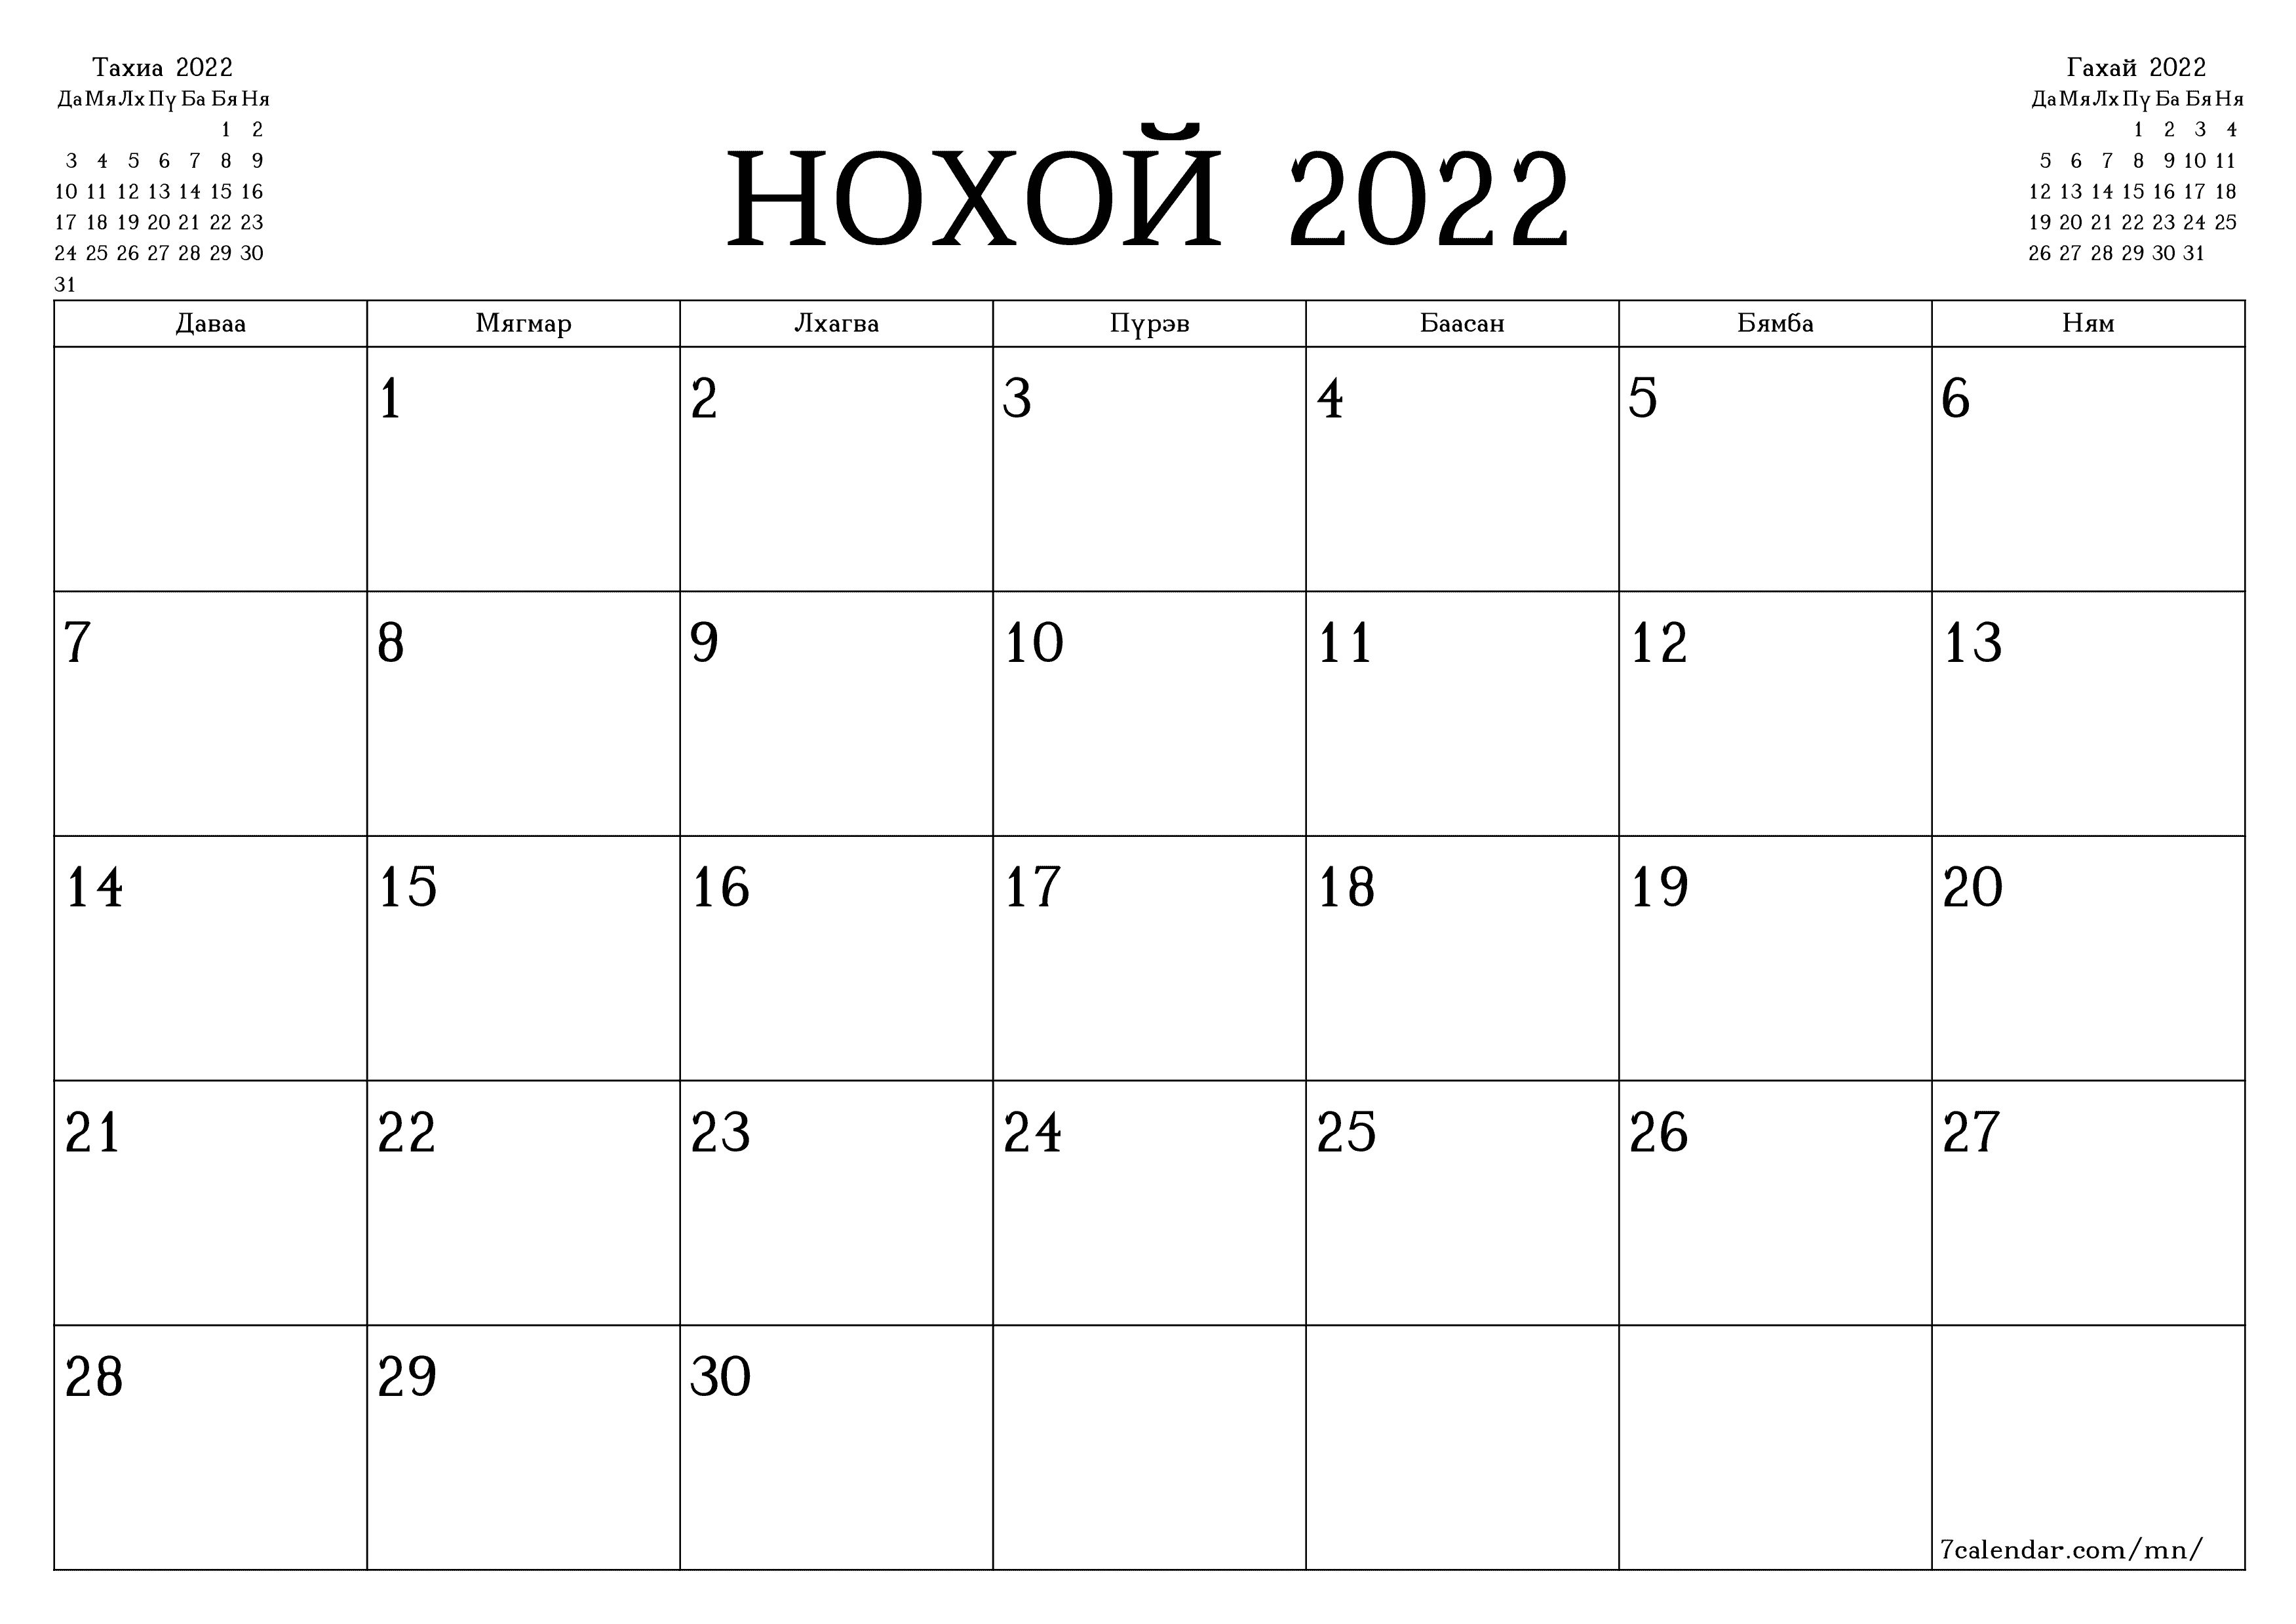 хэвлэх боломжтой ханын календарийн загвар үнэгүй хэвтээ Сар бүр төлөвлөгч хуанли Нохой (Нох) 2022